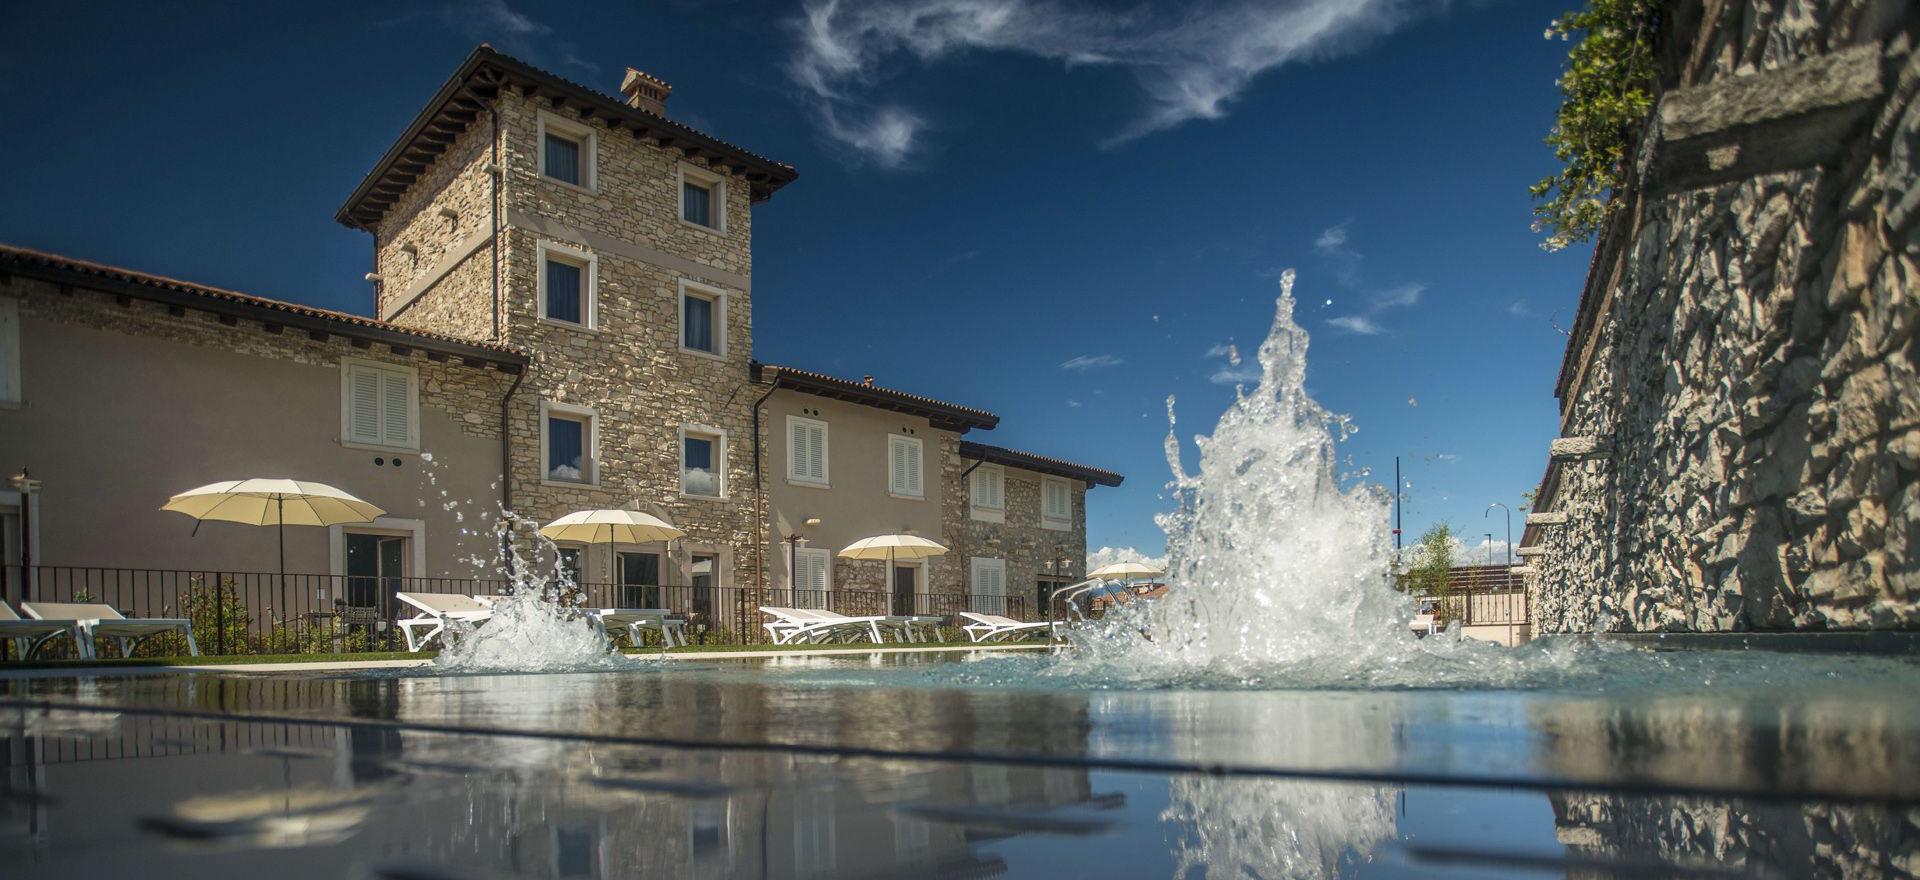 Agriturismo Lake Como and Lake Garda Luxury agriturismo within walking distance of Lake Garda